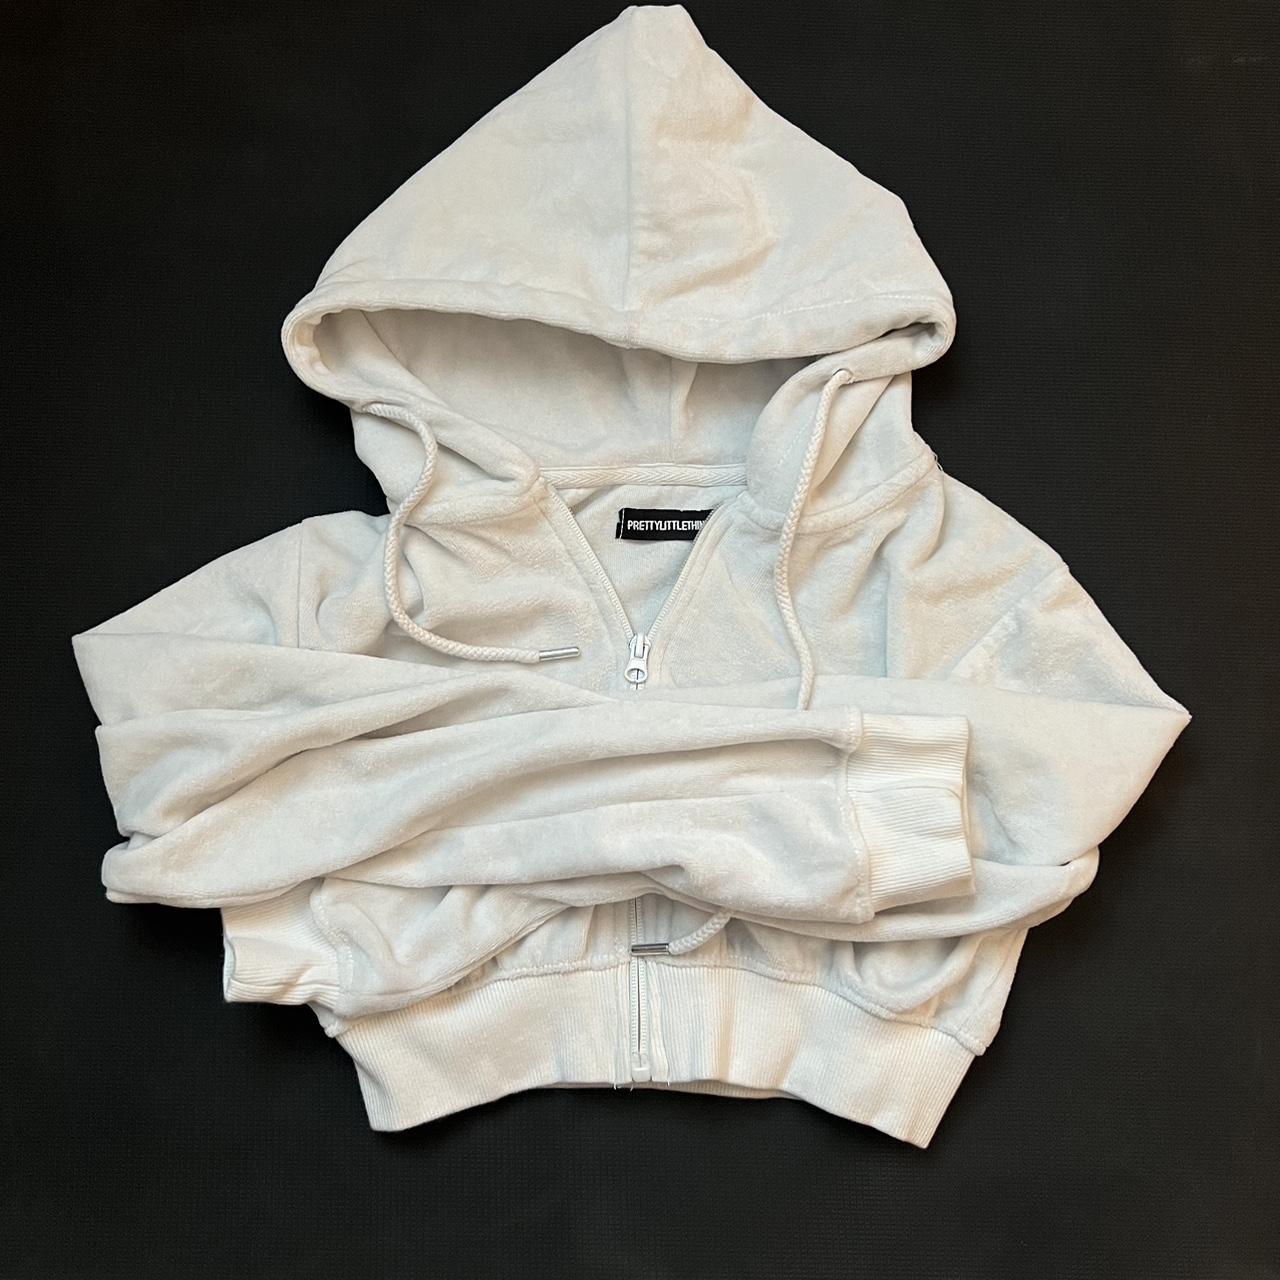 Prettylittlething hoodie - Depop